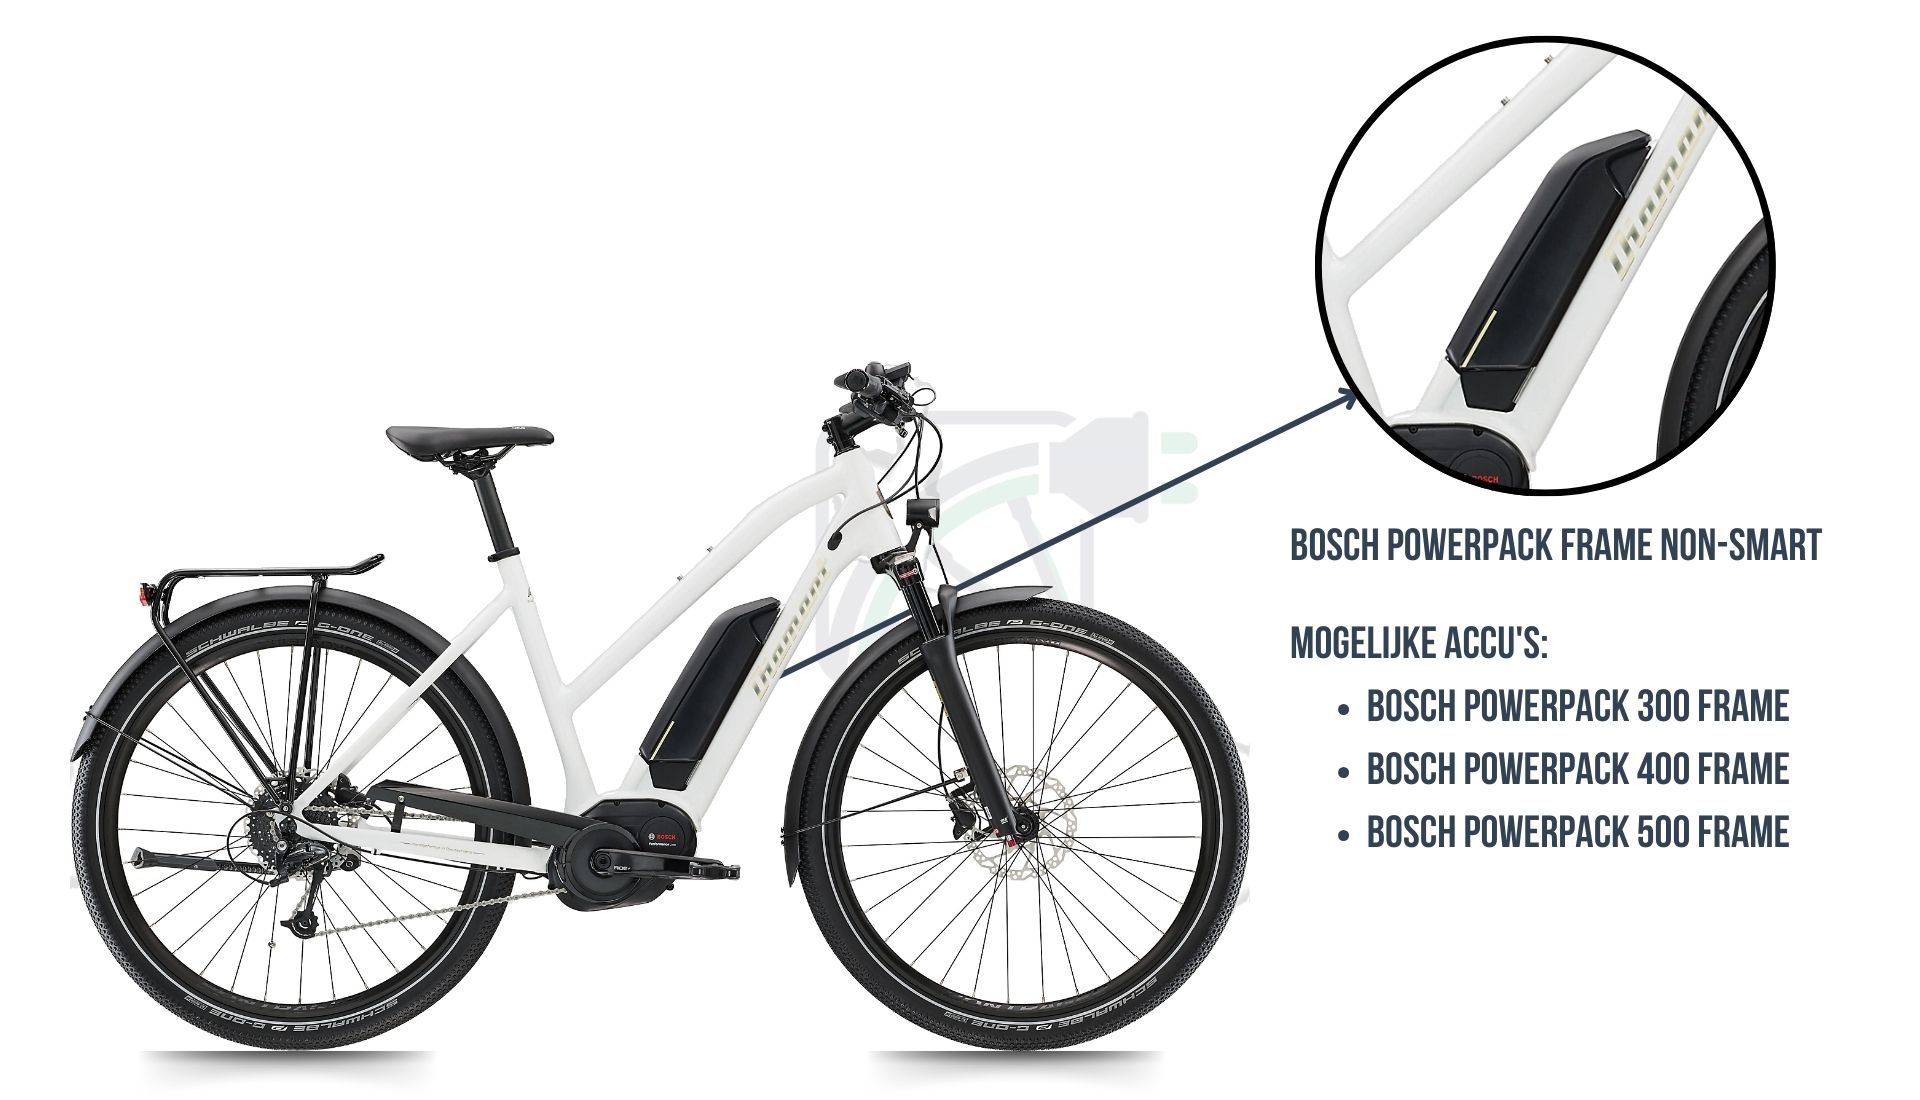 En esta imagen ves la bicicleta eléctrica Diamant Ubari, donde se destaca cuál es la batería adecuada para esta bicicleta, es decir, el Bosch Powerpack 300/400/500 non-SMART frame.